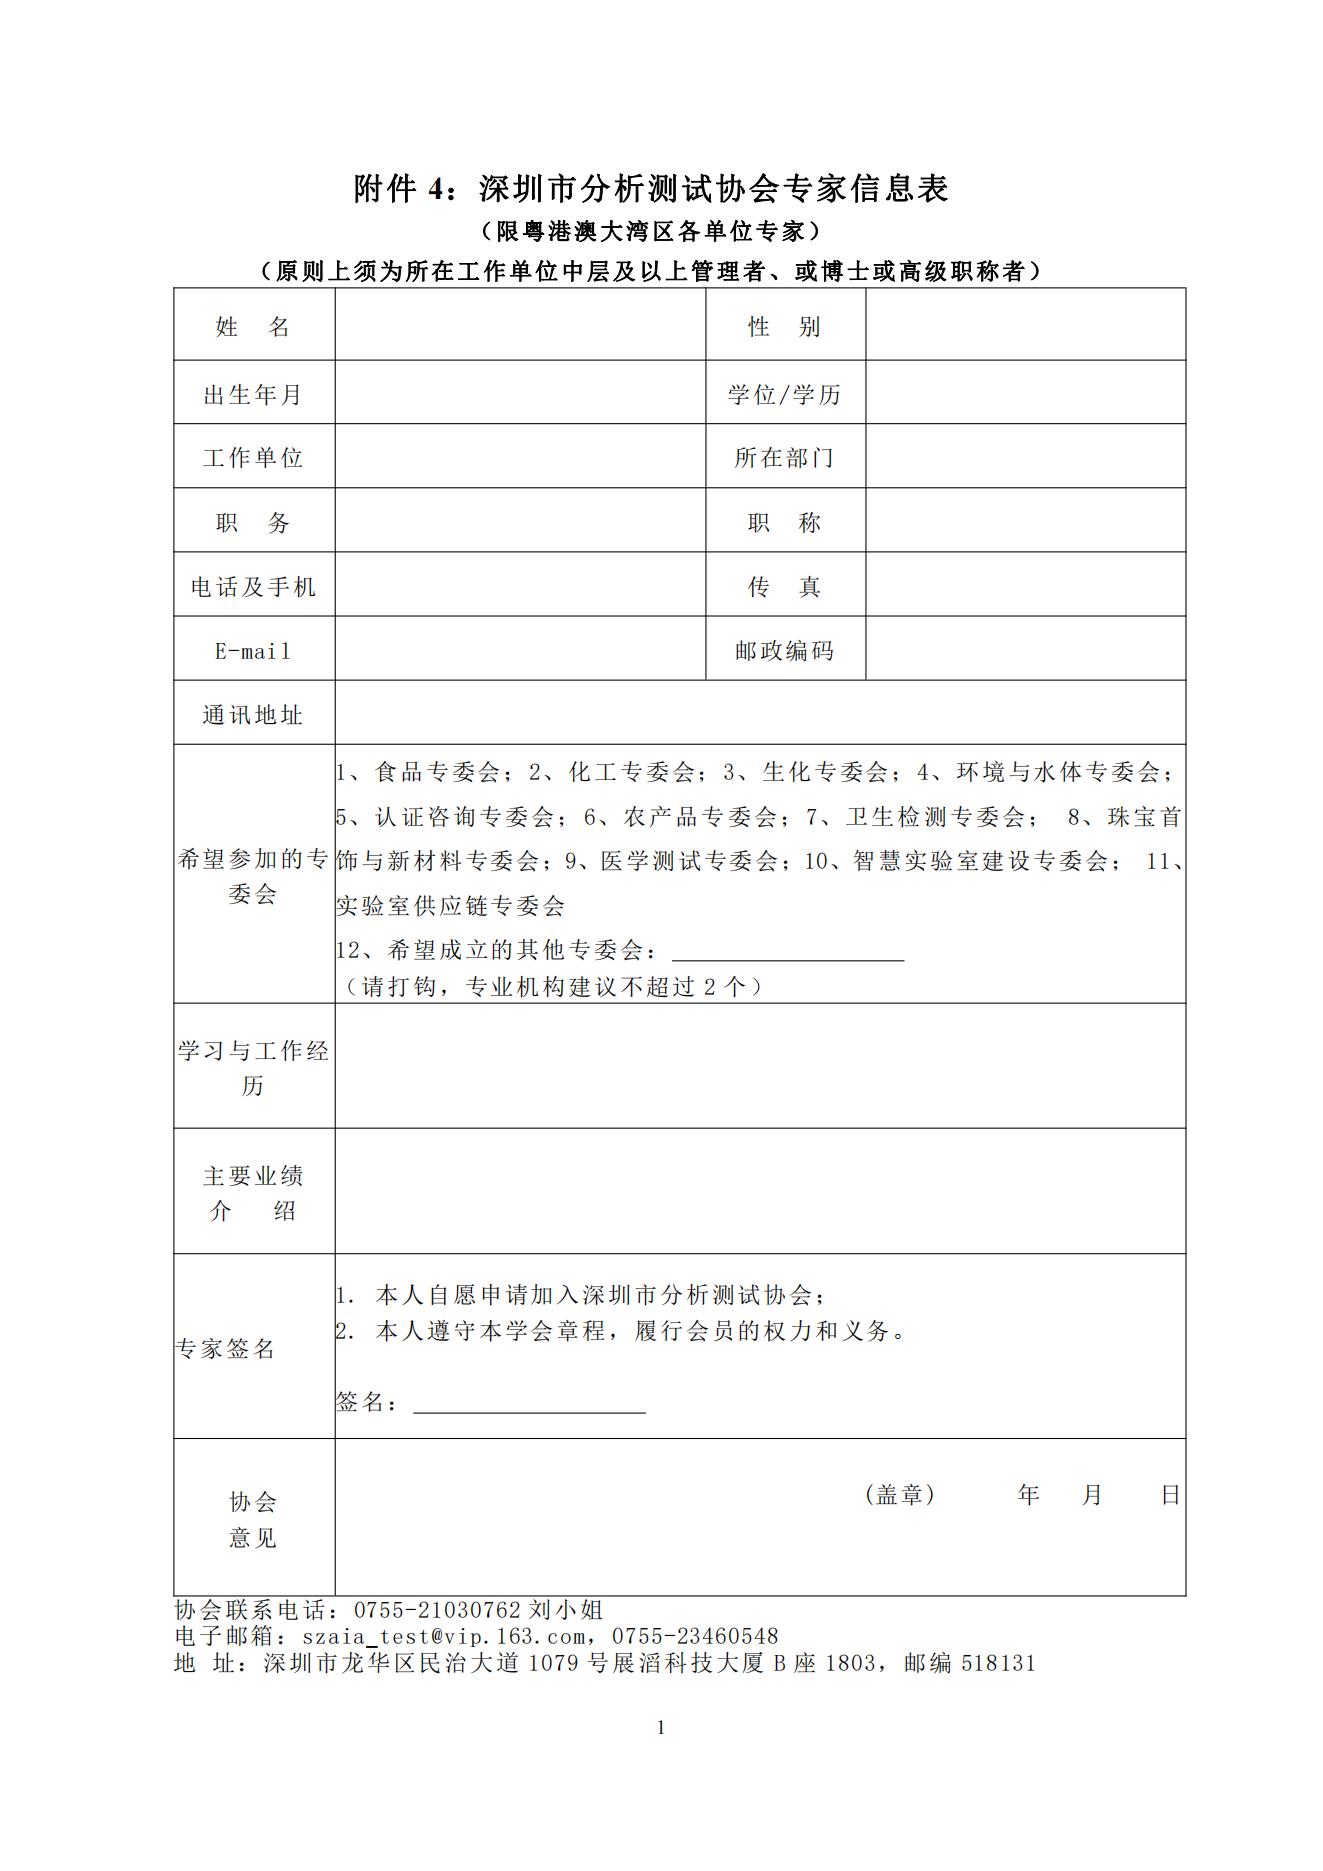 附件4：深圳市分析测试协会专家信息表_00.jpg